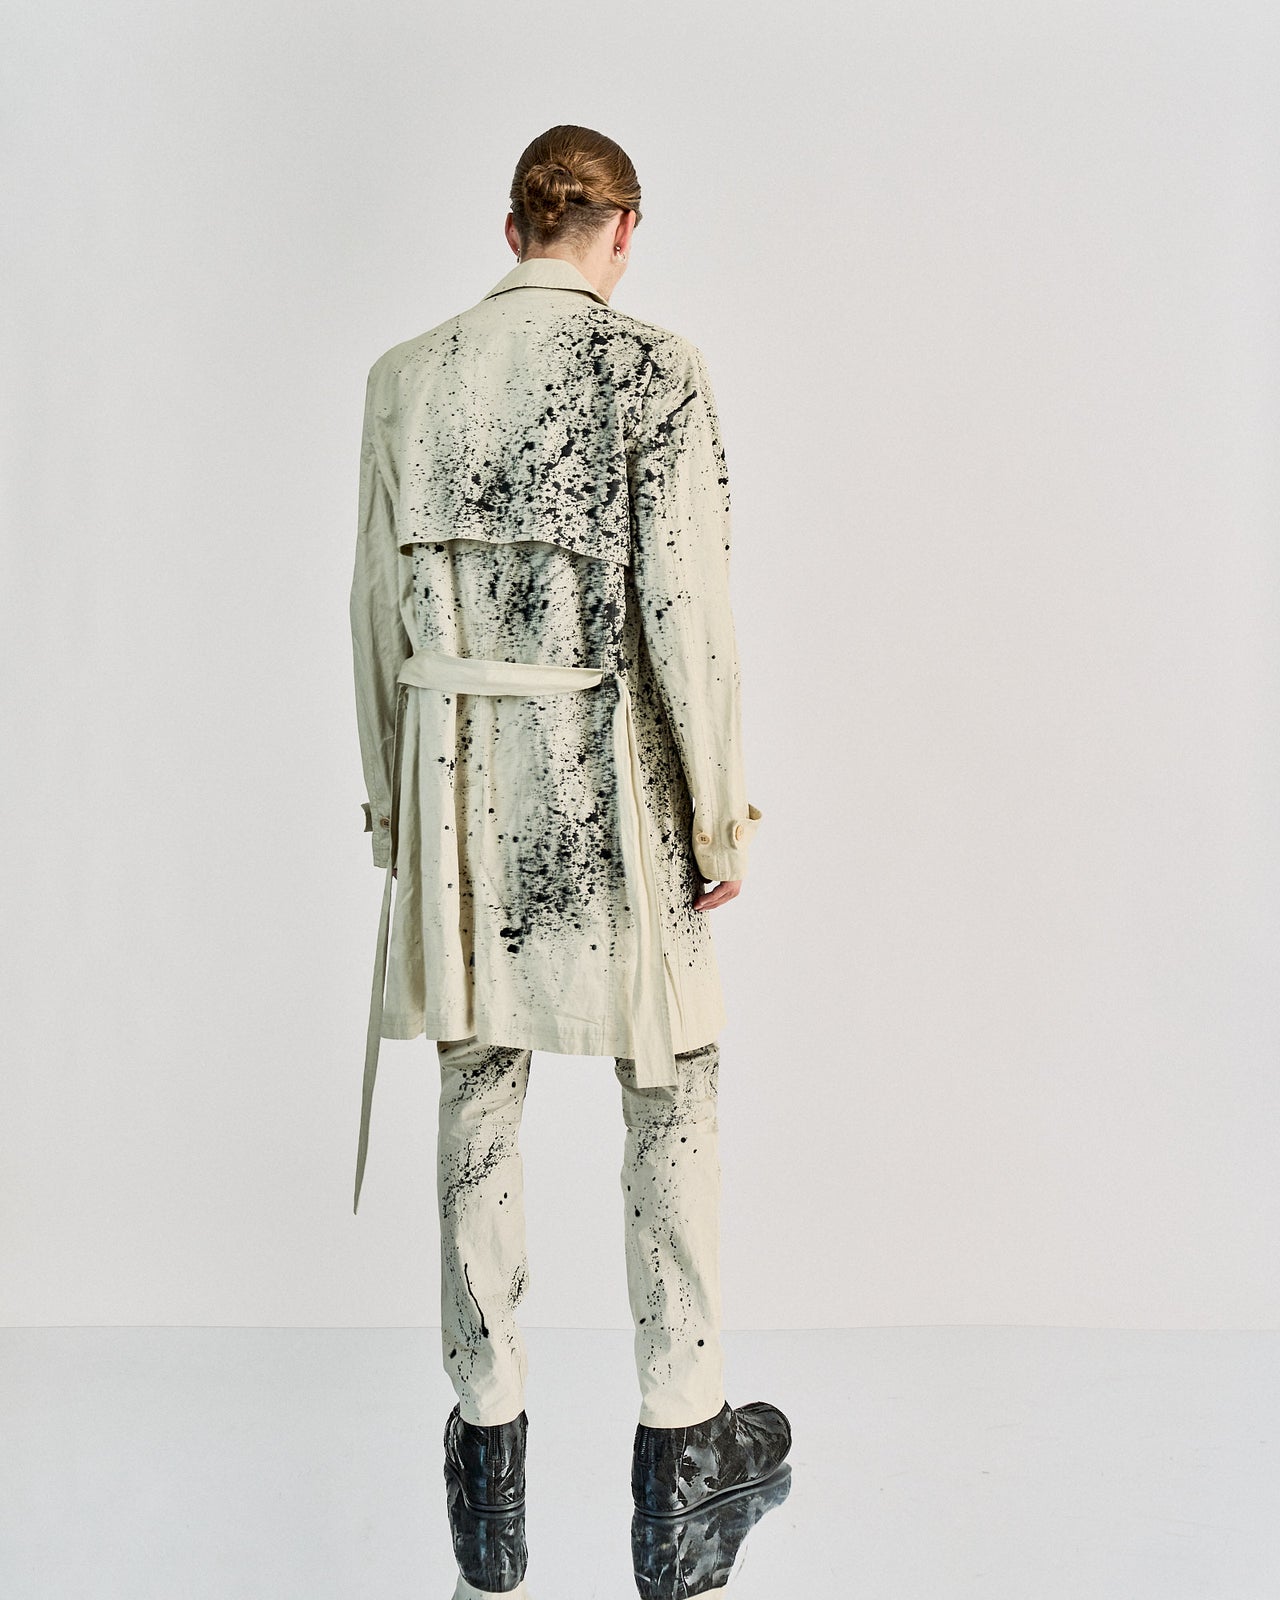 Kris Van Assche SS 2011 Splatter trench coat